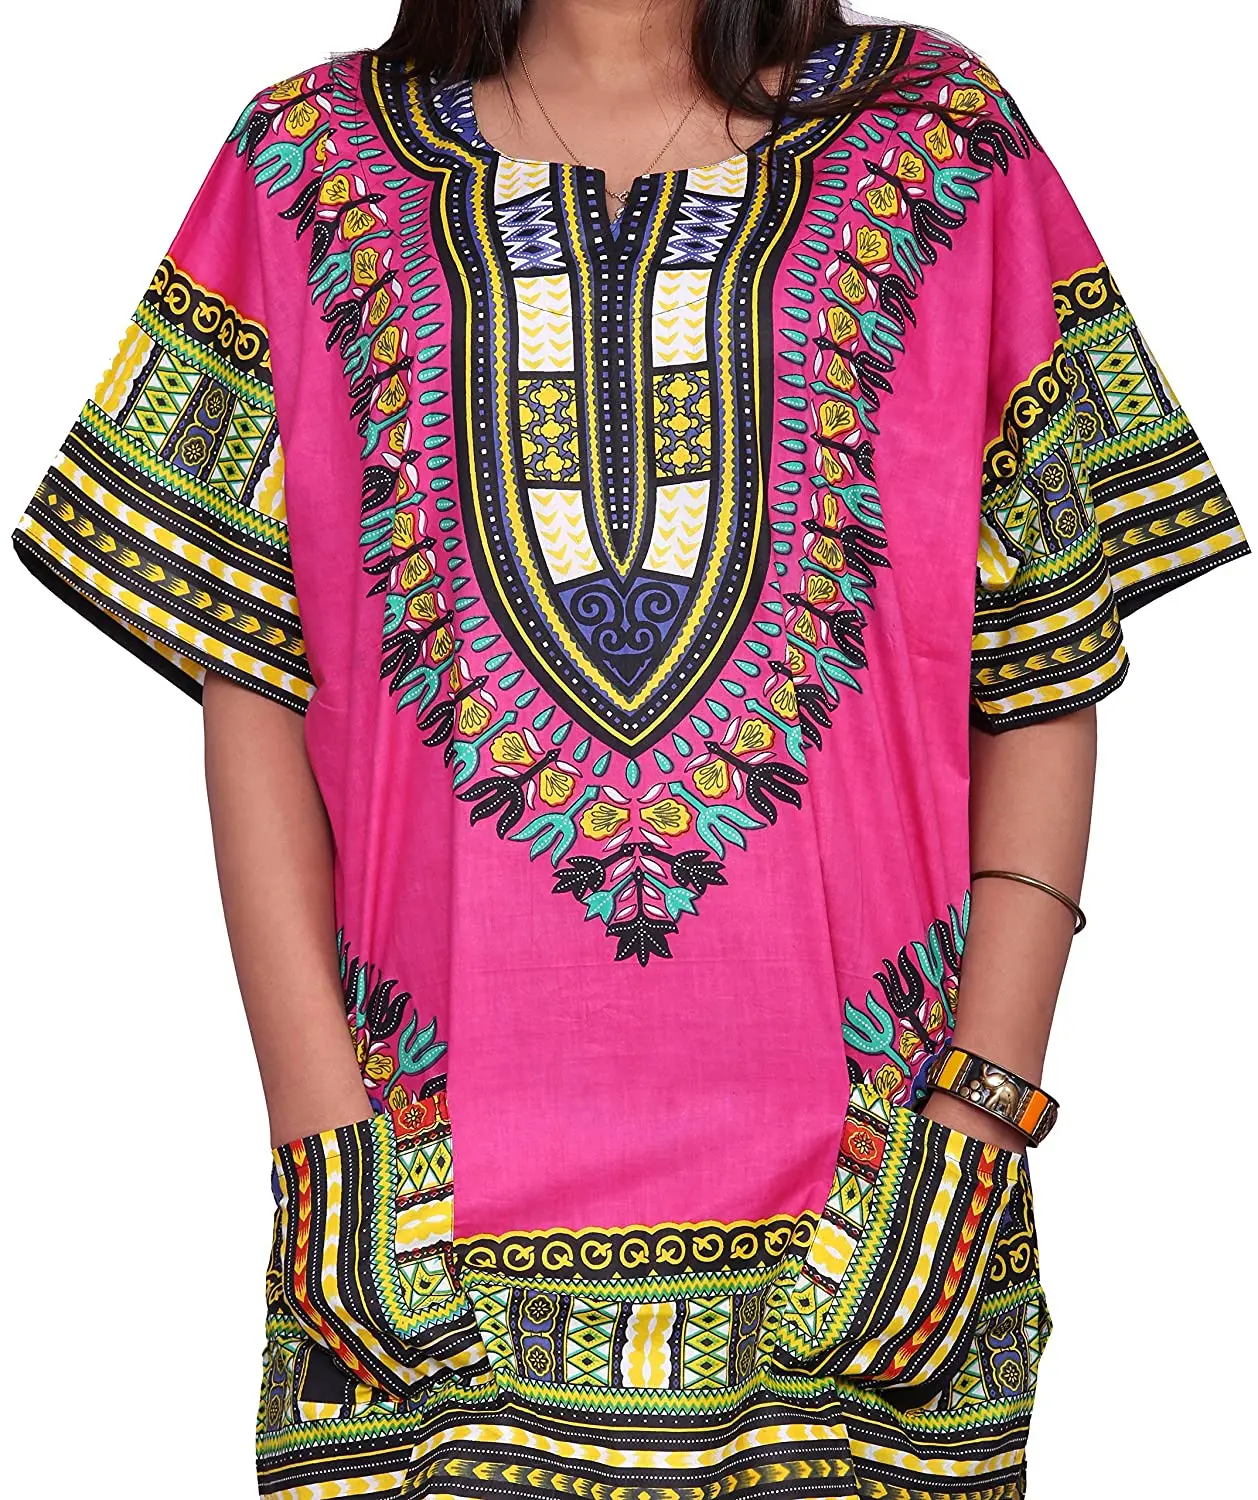 L African dashiki shirts S XL sizes Women Top Hippie Blouse Tribal caftan M 